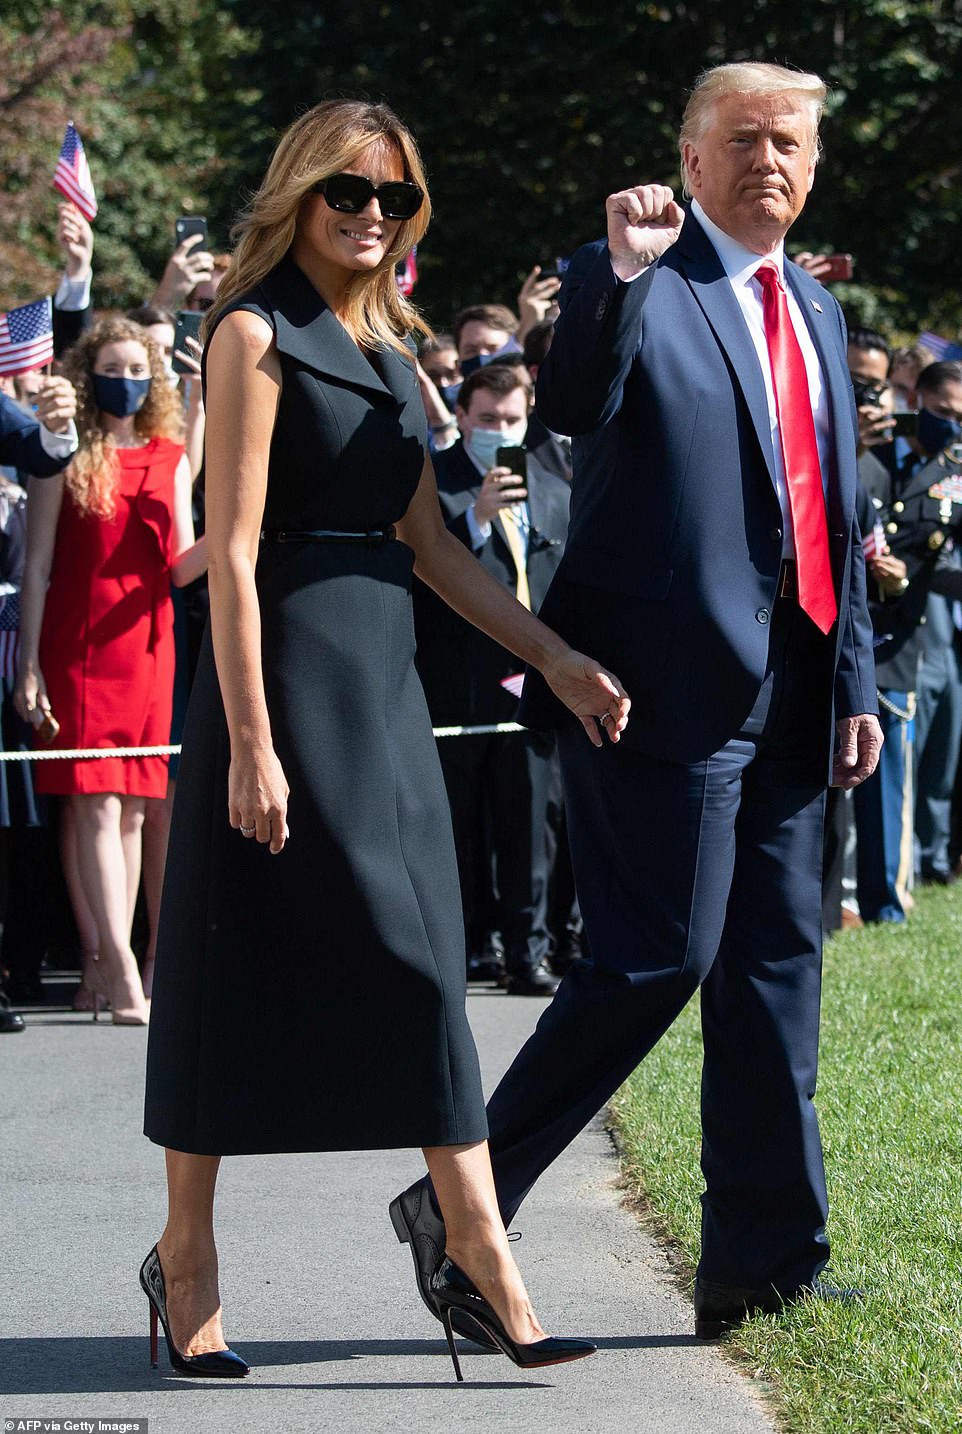 Tổng thống Donald Trump và Đệ nhất phu nhân mỉm cười khi rời Nhà trắng để đến nơi tranh luận - Ảnh: Daily Mail